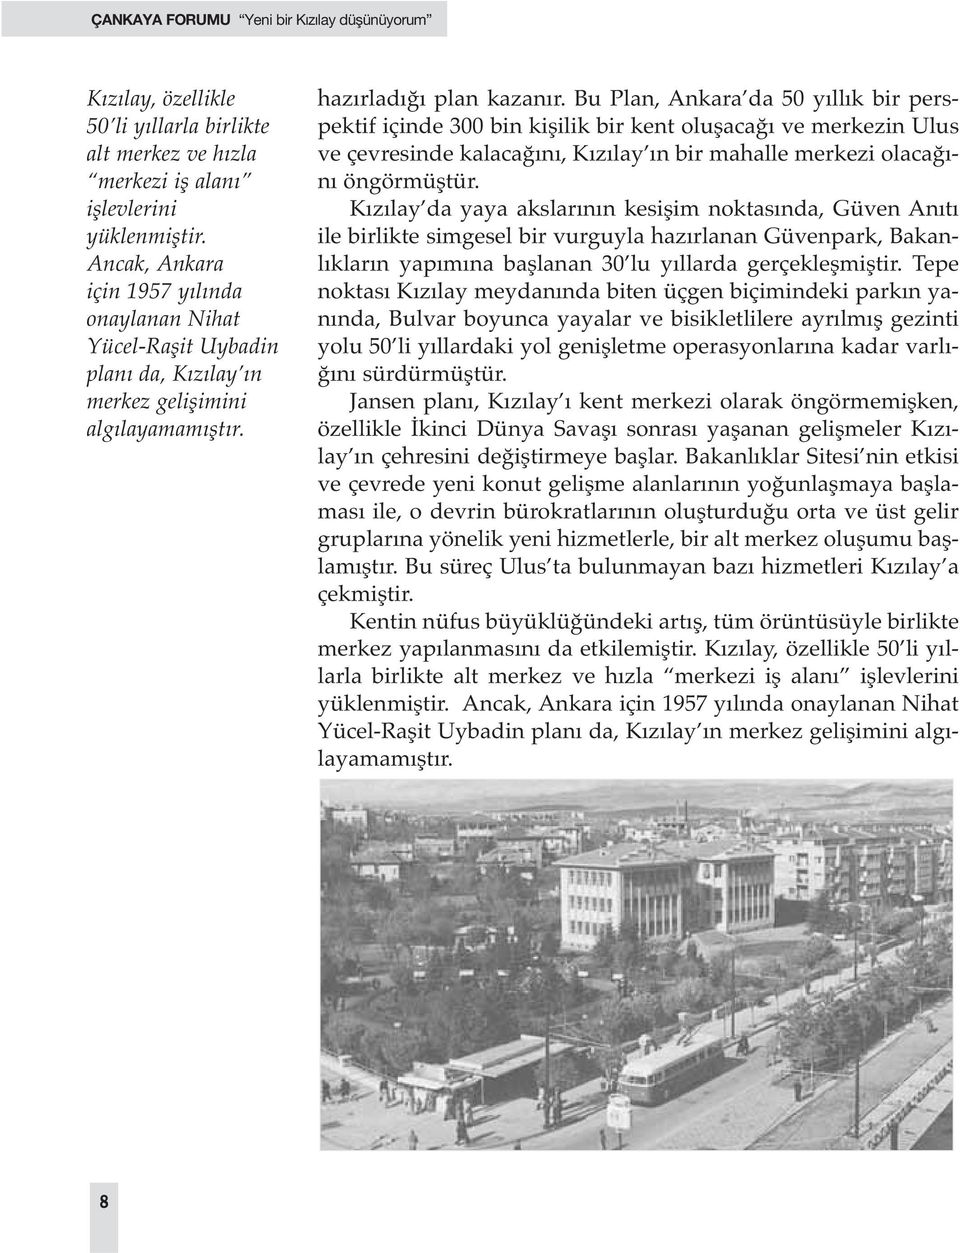 Bu Plan, Ankara da 50 yıllık bir perspektif içinde 300 bin kişilik bir kent oluşacağı ve merkezin Ulus ve çevresinde kalacağını, Kızılay ın bir mahalle merkezi olacağını öngörmüştür.